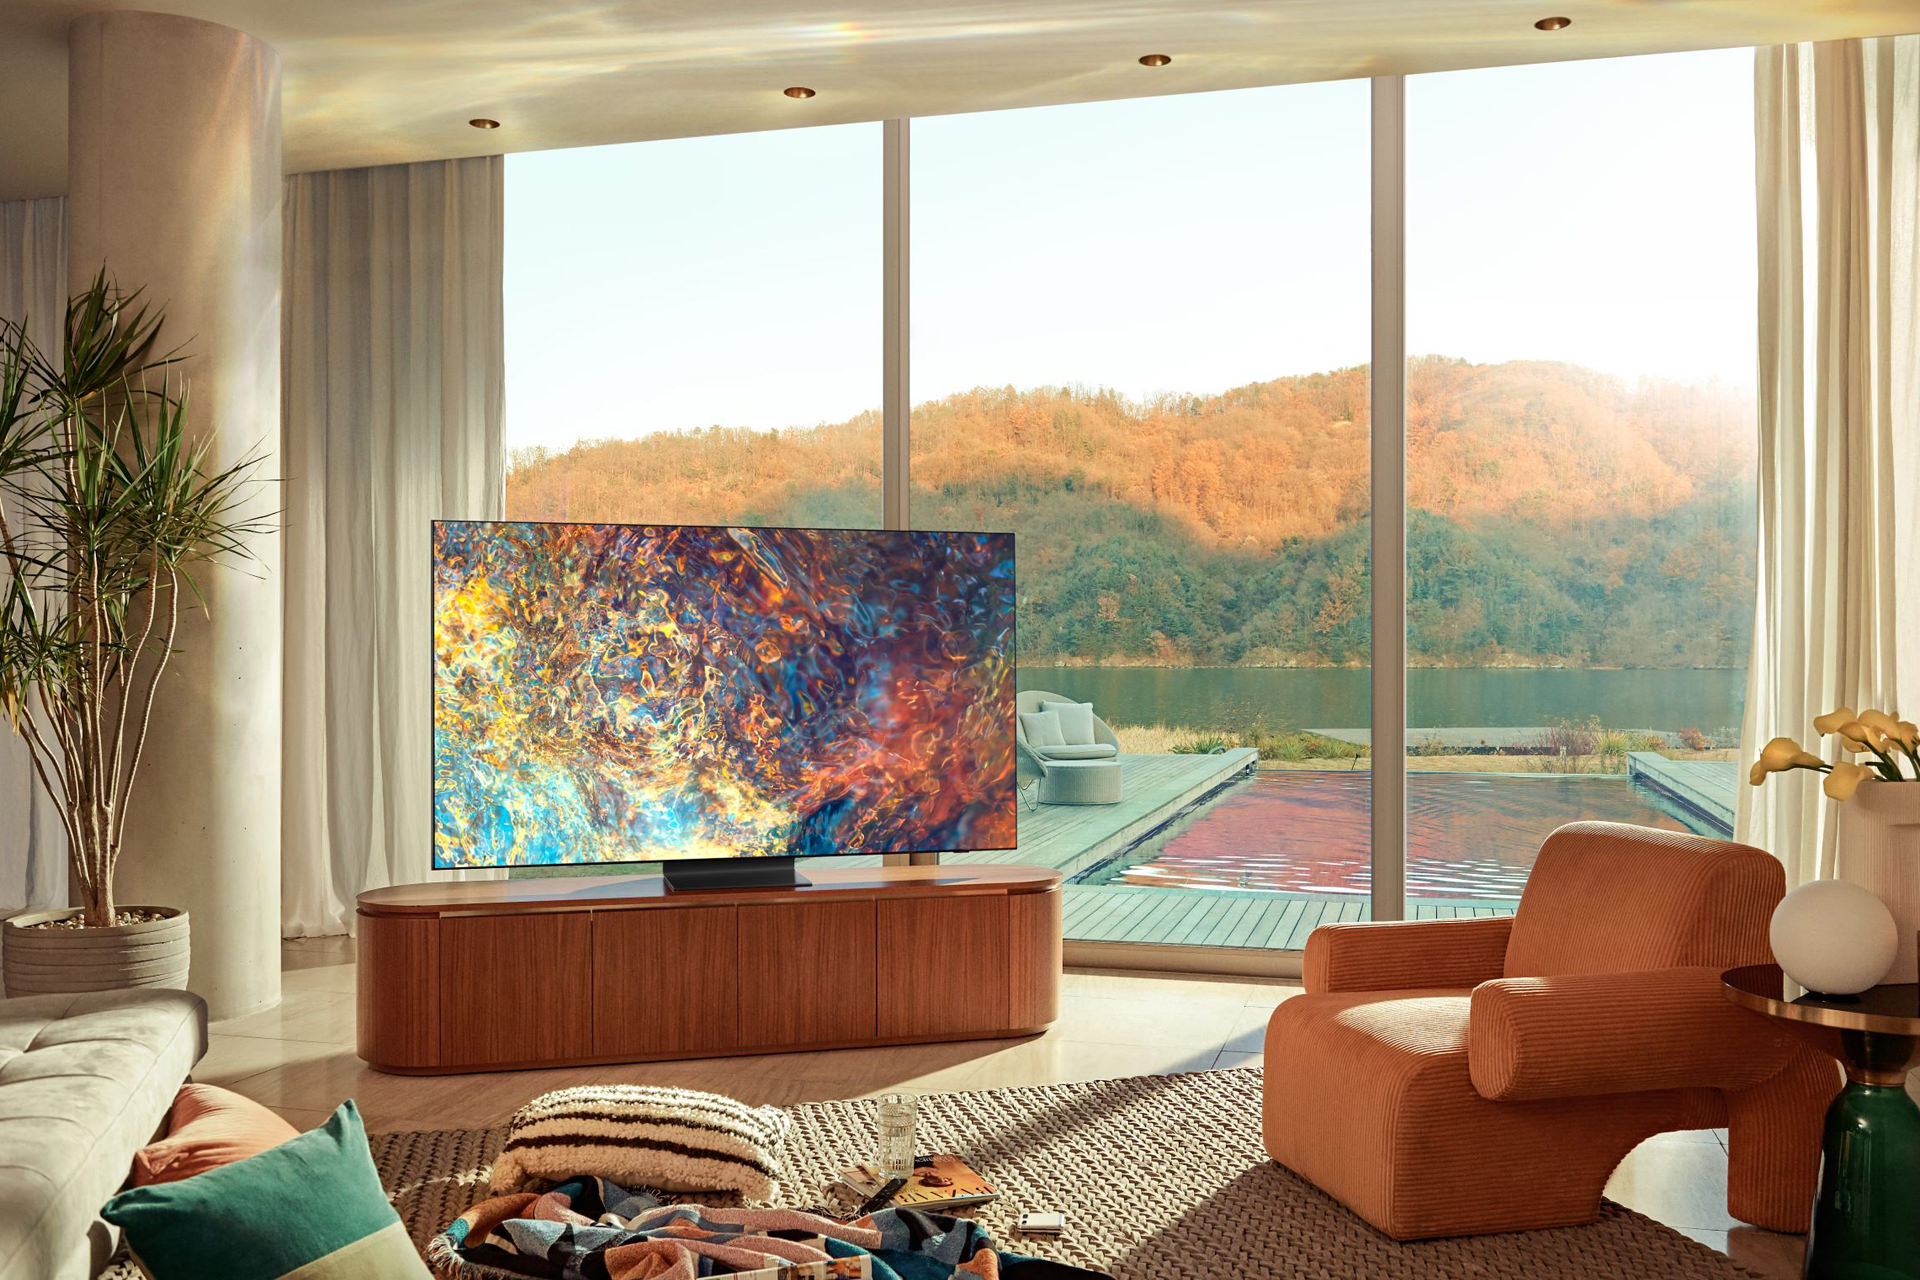 تلویزیون Neo QLED 2021 سامسونگ در اتاق با نور خورشید